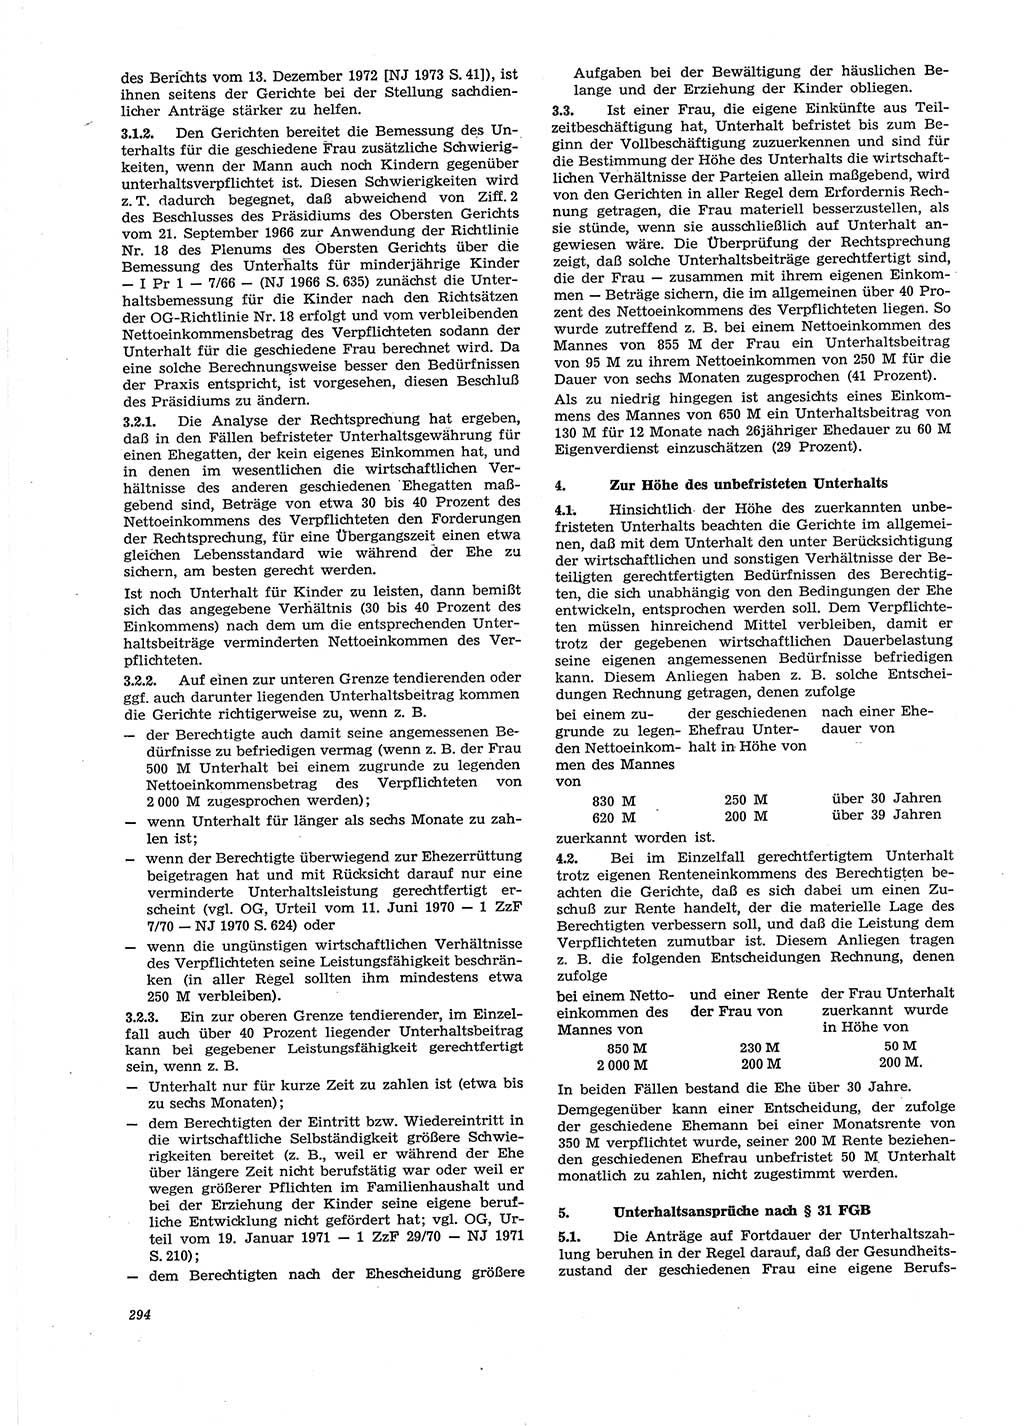 Neue Justiz (NJ), Zeitschrift für Recht und Rechtswissenschaft [Deutsche Demokratische Republik (DDR)], 29. Jahrgang 1975, Seite 294 (NJ DDR 1975, S. 294)